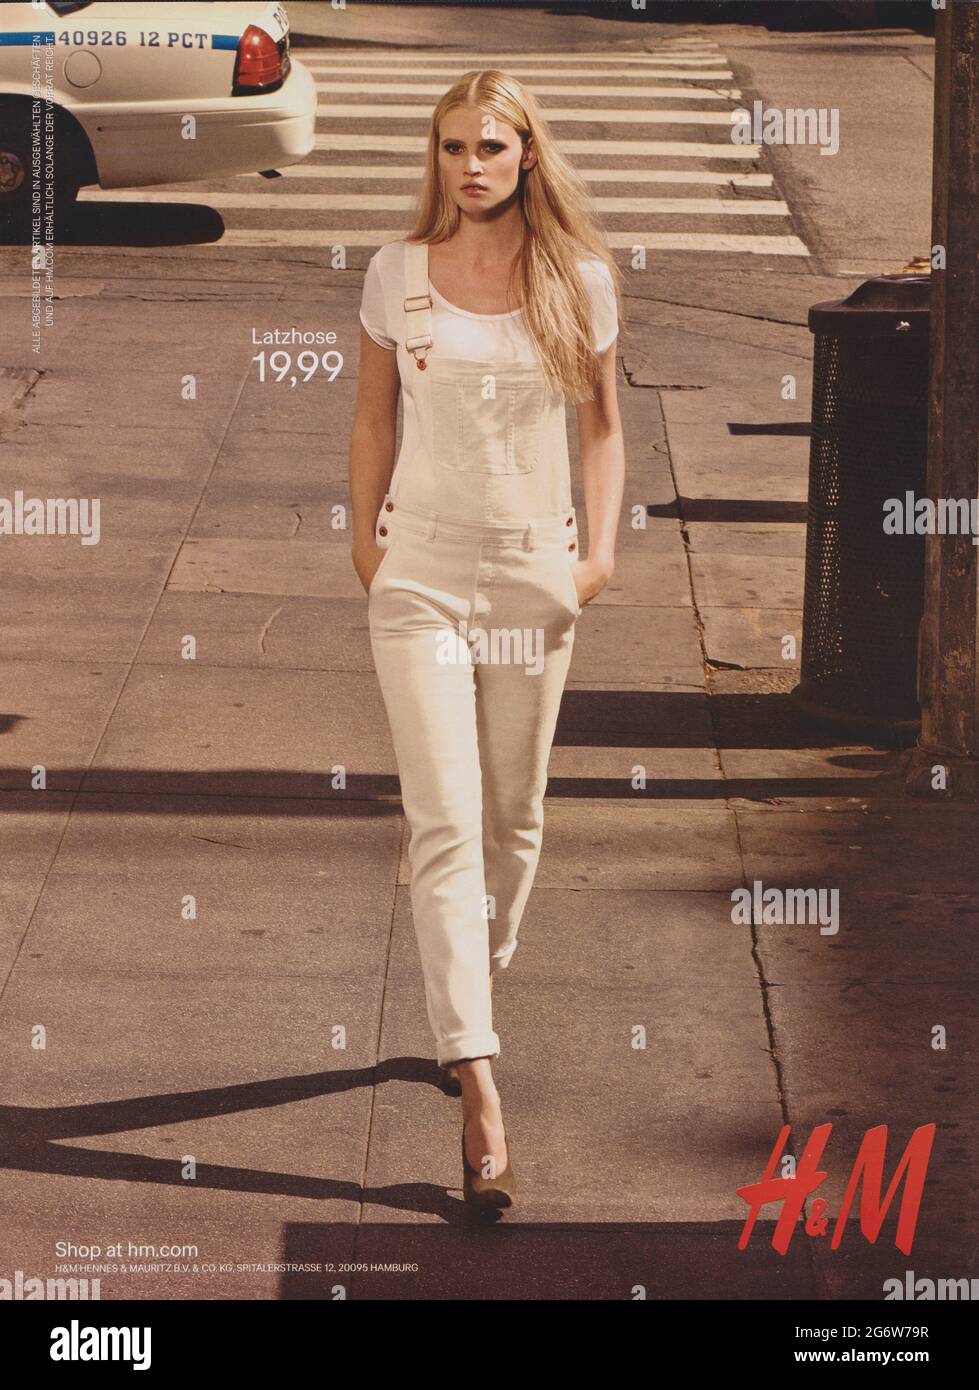 Plakat-Werbung H&M mit Lara Stone im Papiermagazin von 2015 Jahren, Werbung,  kreative Hennes & Mauritz-Werbung aus den 2010er Jahren Stockfotografie -  Alamy